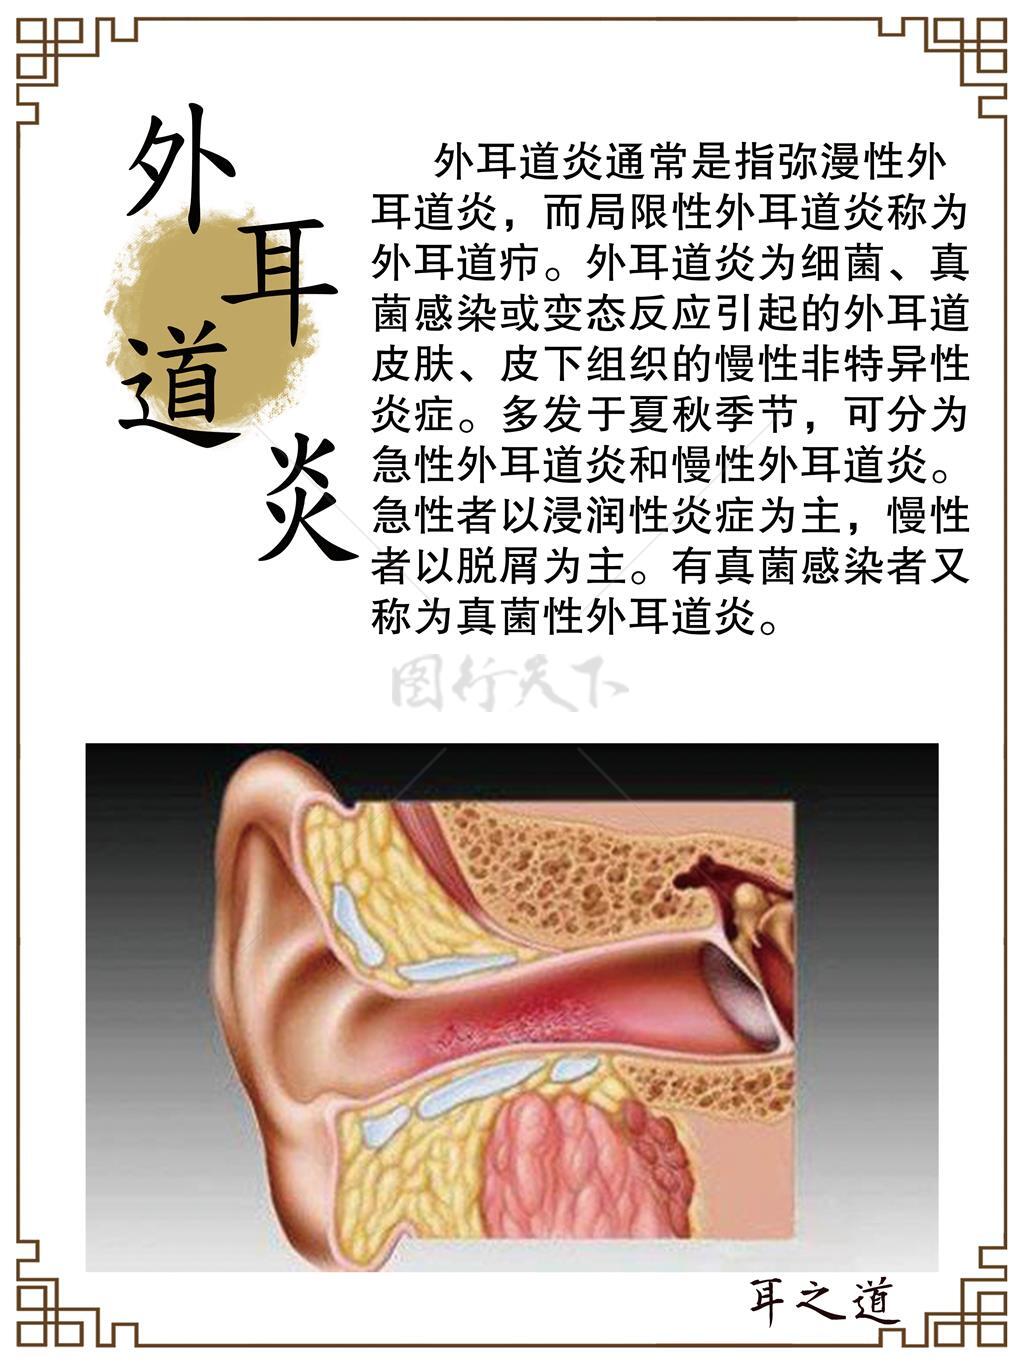 外耳道炎 中医养生 养生文化 古法养生 护耳